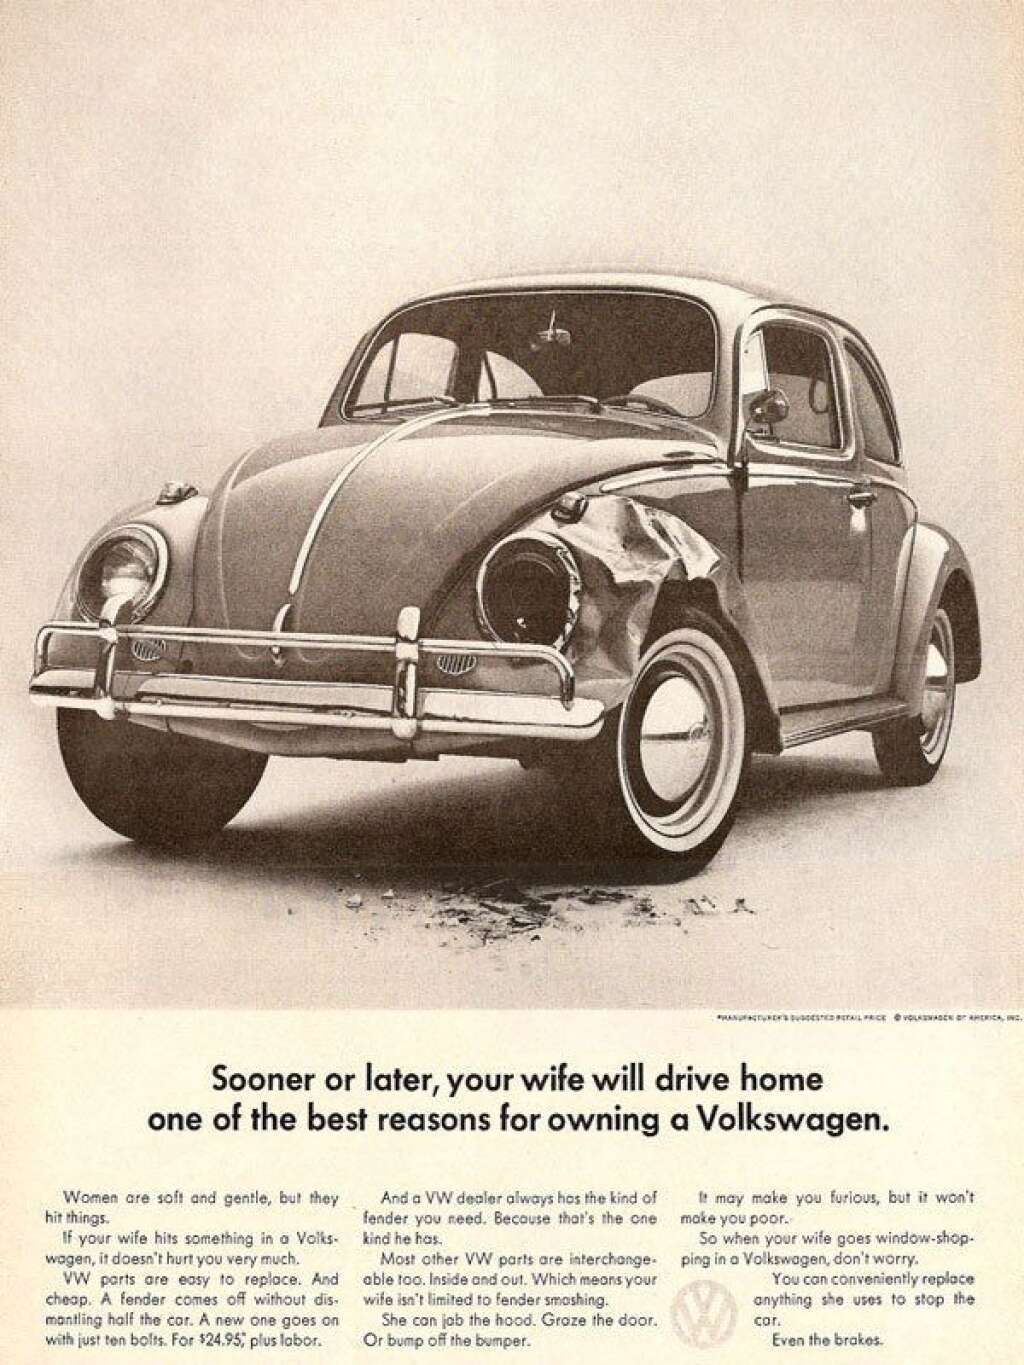 Volkswagen - "Un jour, votre femme rentrera à la maison en voiture. Une bonne raison pour préférer une Volkswagen". Eh oui, déjà à l'époque on aimait à dire que les femmes conduisaient comme leurs pieds. On sait aujourd'hui que <a href="http://lci.tf1.fr/science/nouvelles-technologies/2007-10/femmes-volant-moins-accidents-5520454.html">c'est faux</a> !